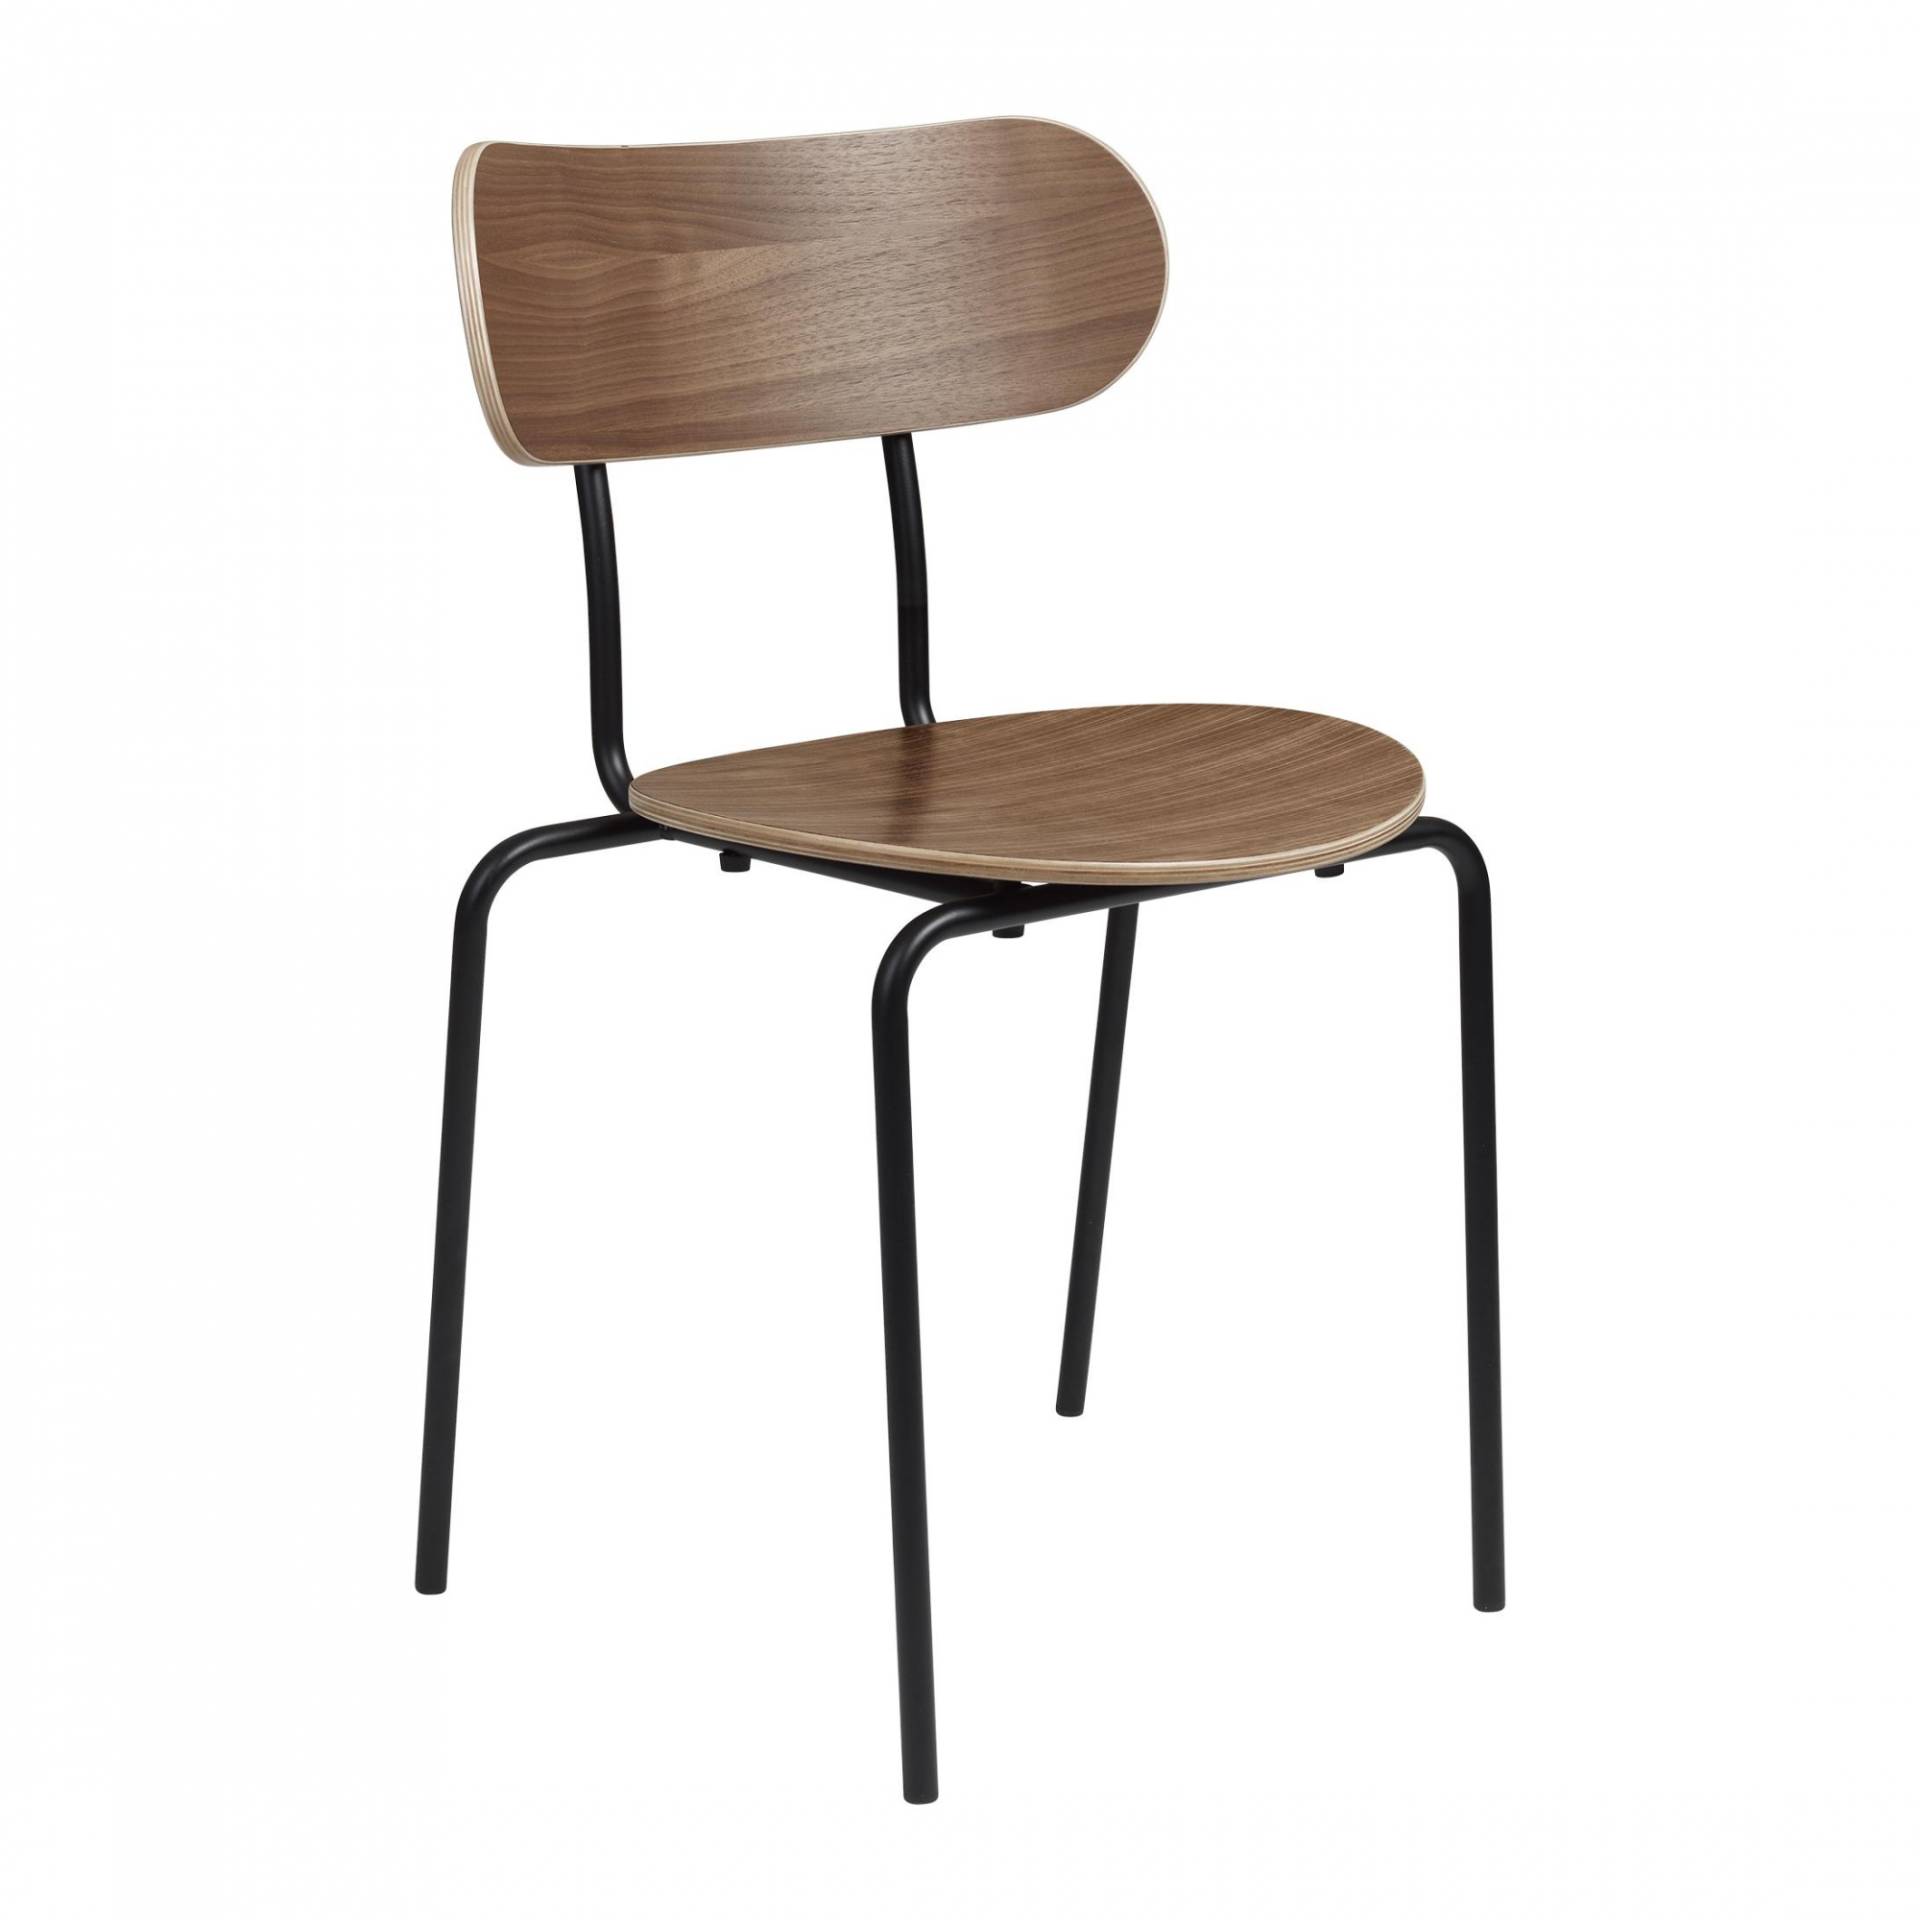 Gubi - Coco Dining Chair stapelbar - Walnuss lackiert/BxTxH 50x53x81cm/mit Kunststoffgleitern/Gestell Metall schwarz RAL 9005 matt lackiert von Gubi